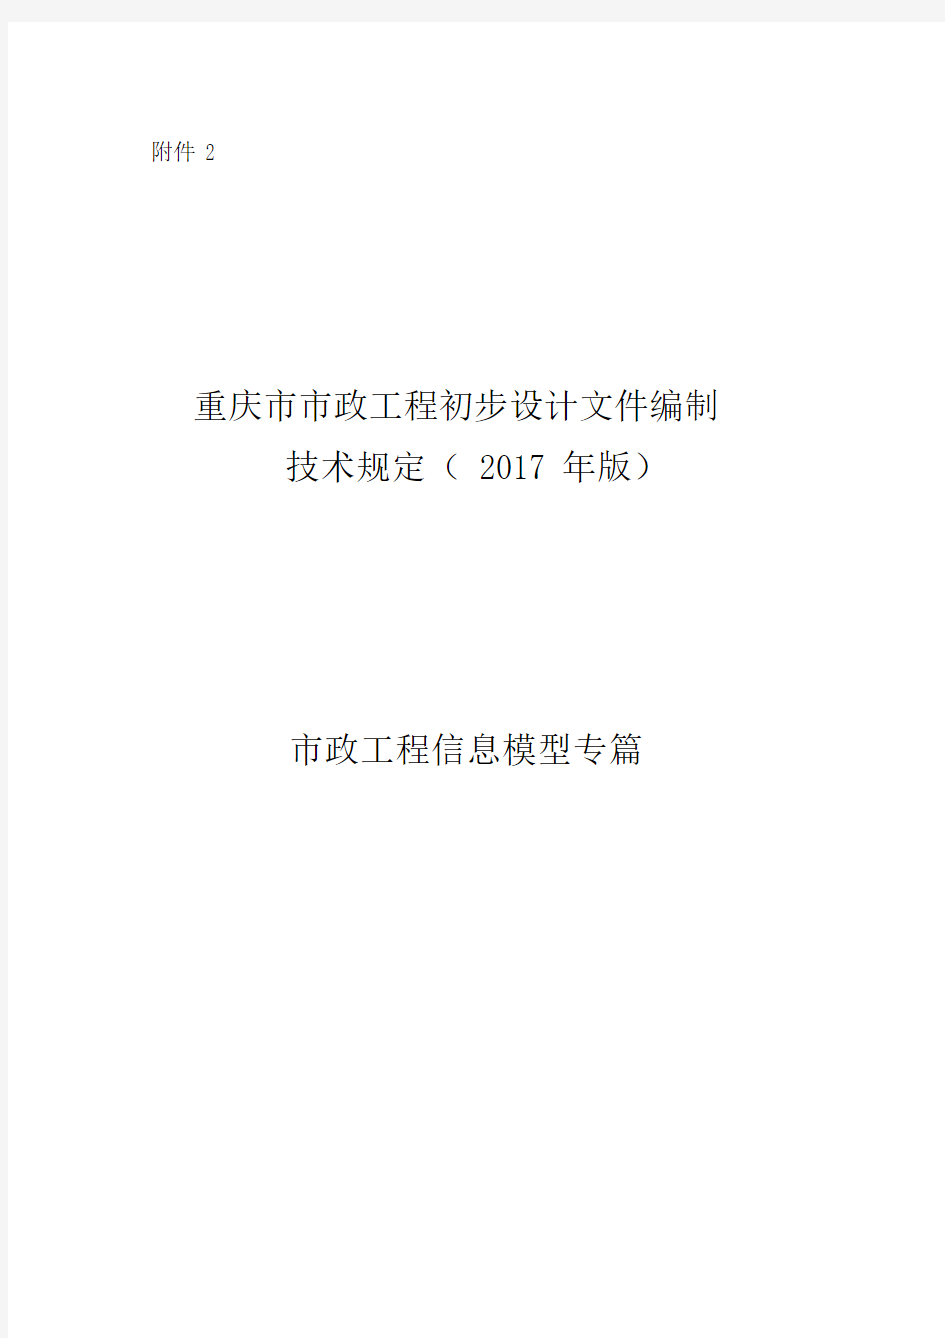 重庆市市政工程初步设计文件编制技术规定(2017年版)市政工程信息模型专篇.docx